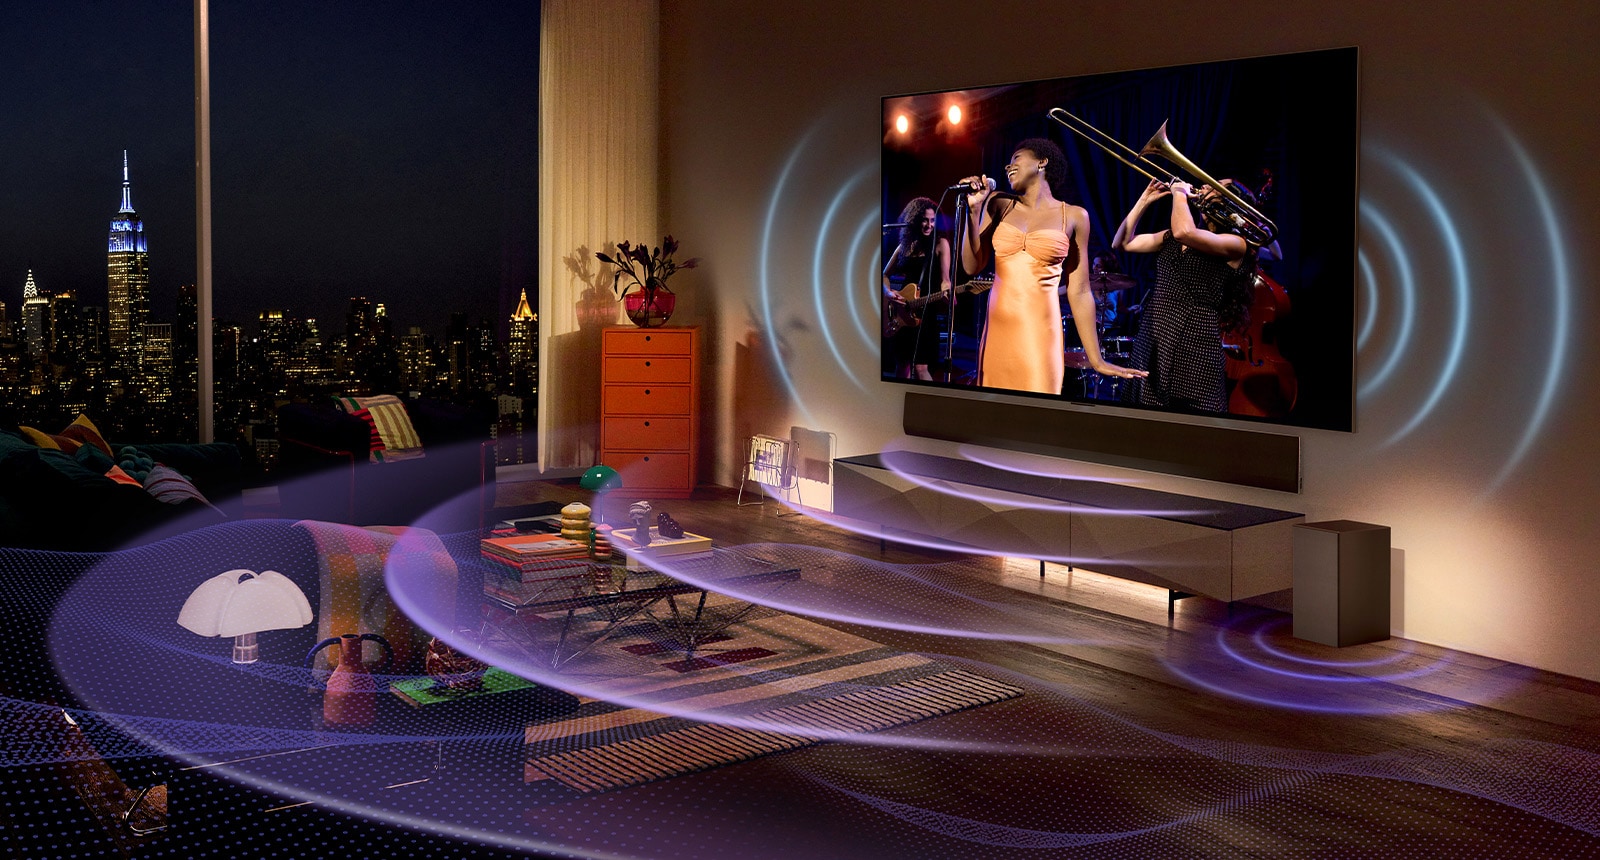 Zdjęcie telewizora LG OLED w pomieszczeniu. TV przedstawiający scenę z koncertu. Niebieskie wygięte linie przedstawiające dźwięk wydobywający się z telewizora i fioletowe wygięte linie przedstawiające dźwięk wydobywający się z soundbara wypełniają przestrzeń.